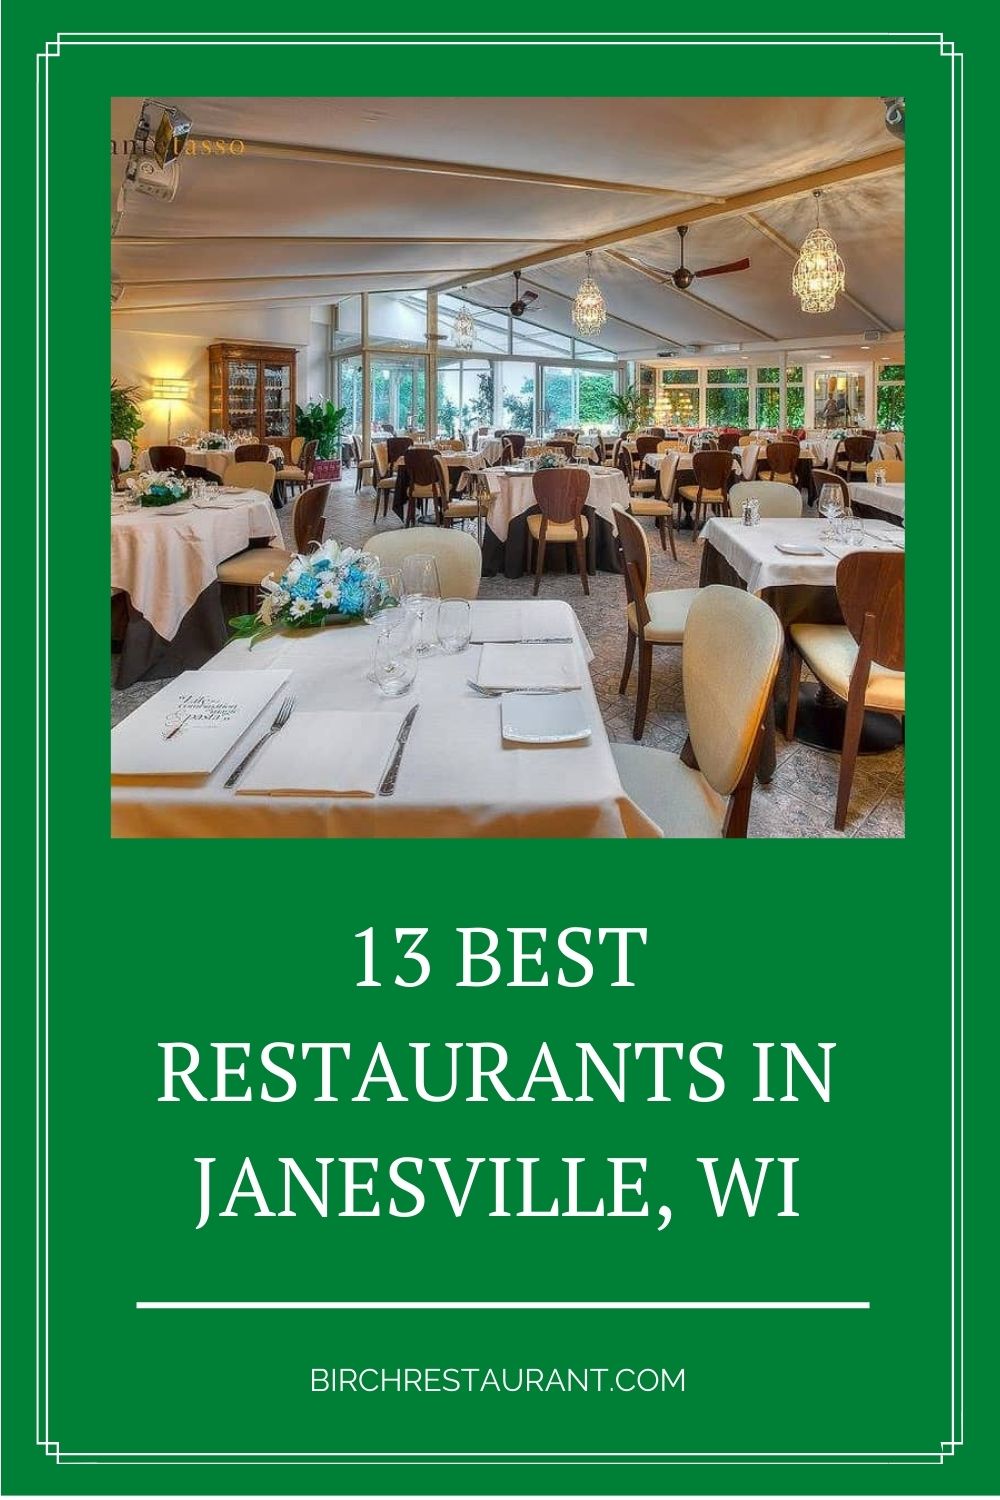 Best Restaurants in Janesville